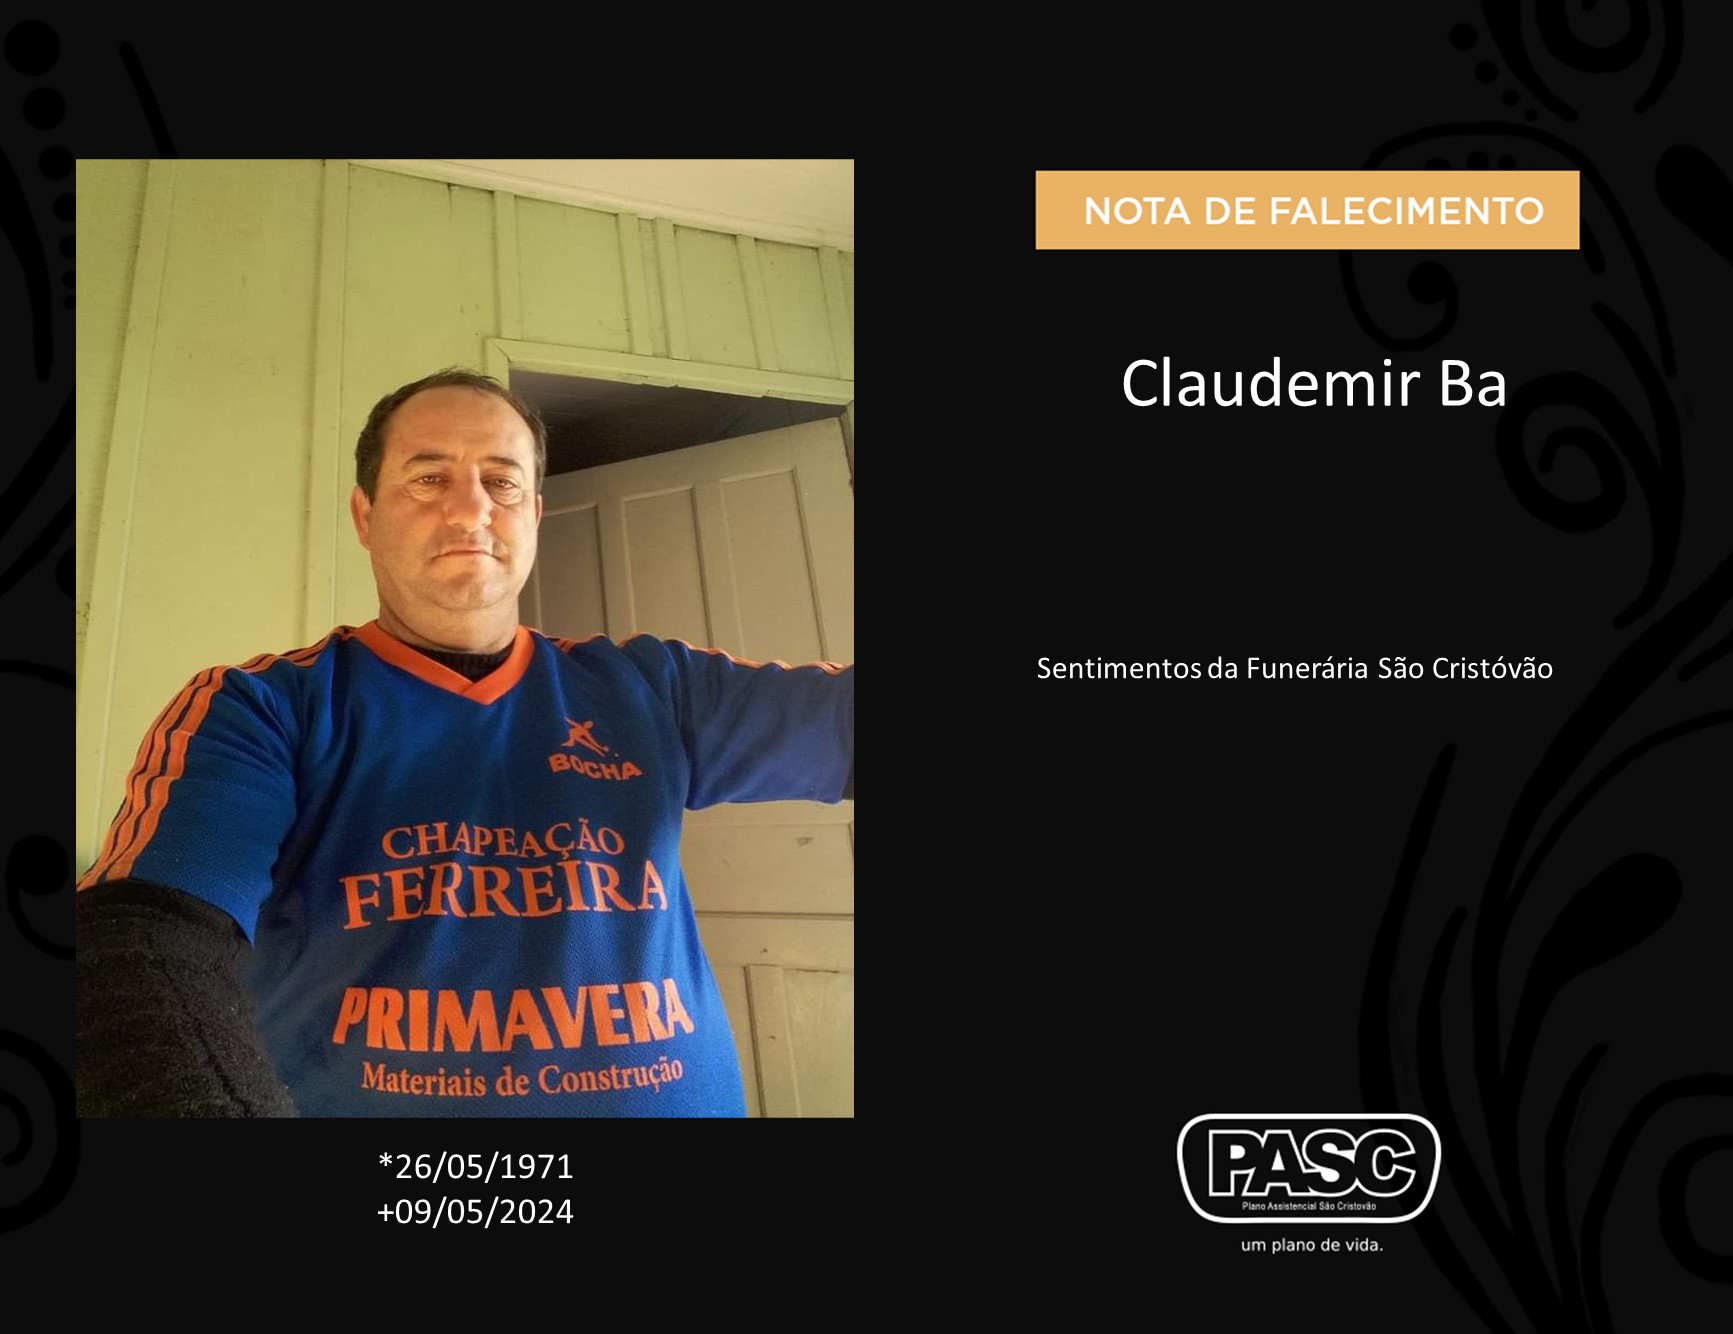 Francisco Beltrão: Familiares informam falecimento de Claudemir Ba